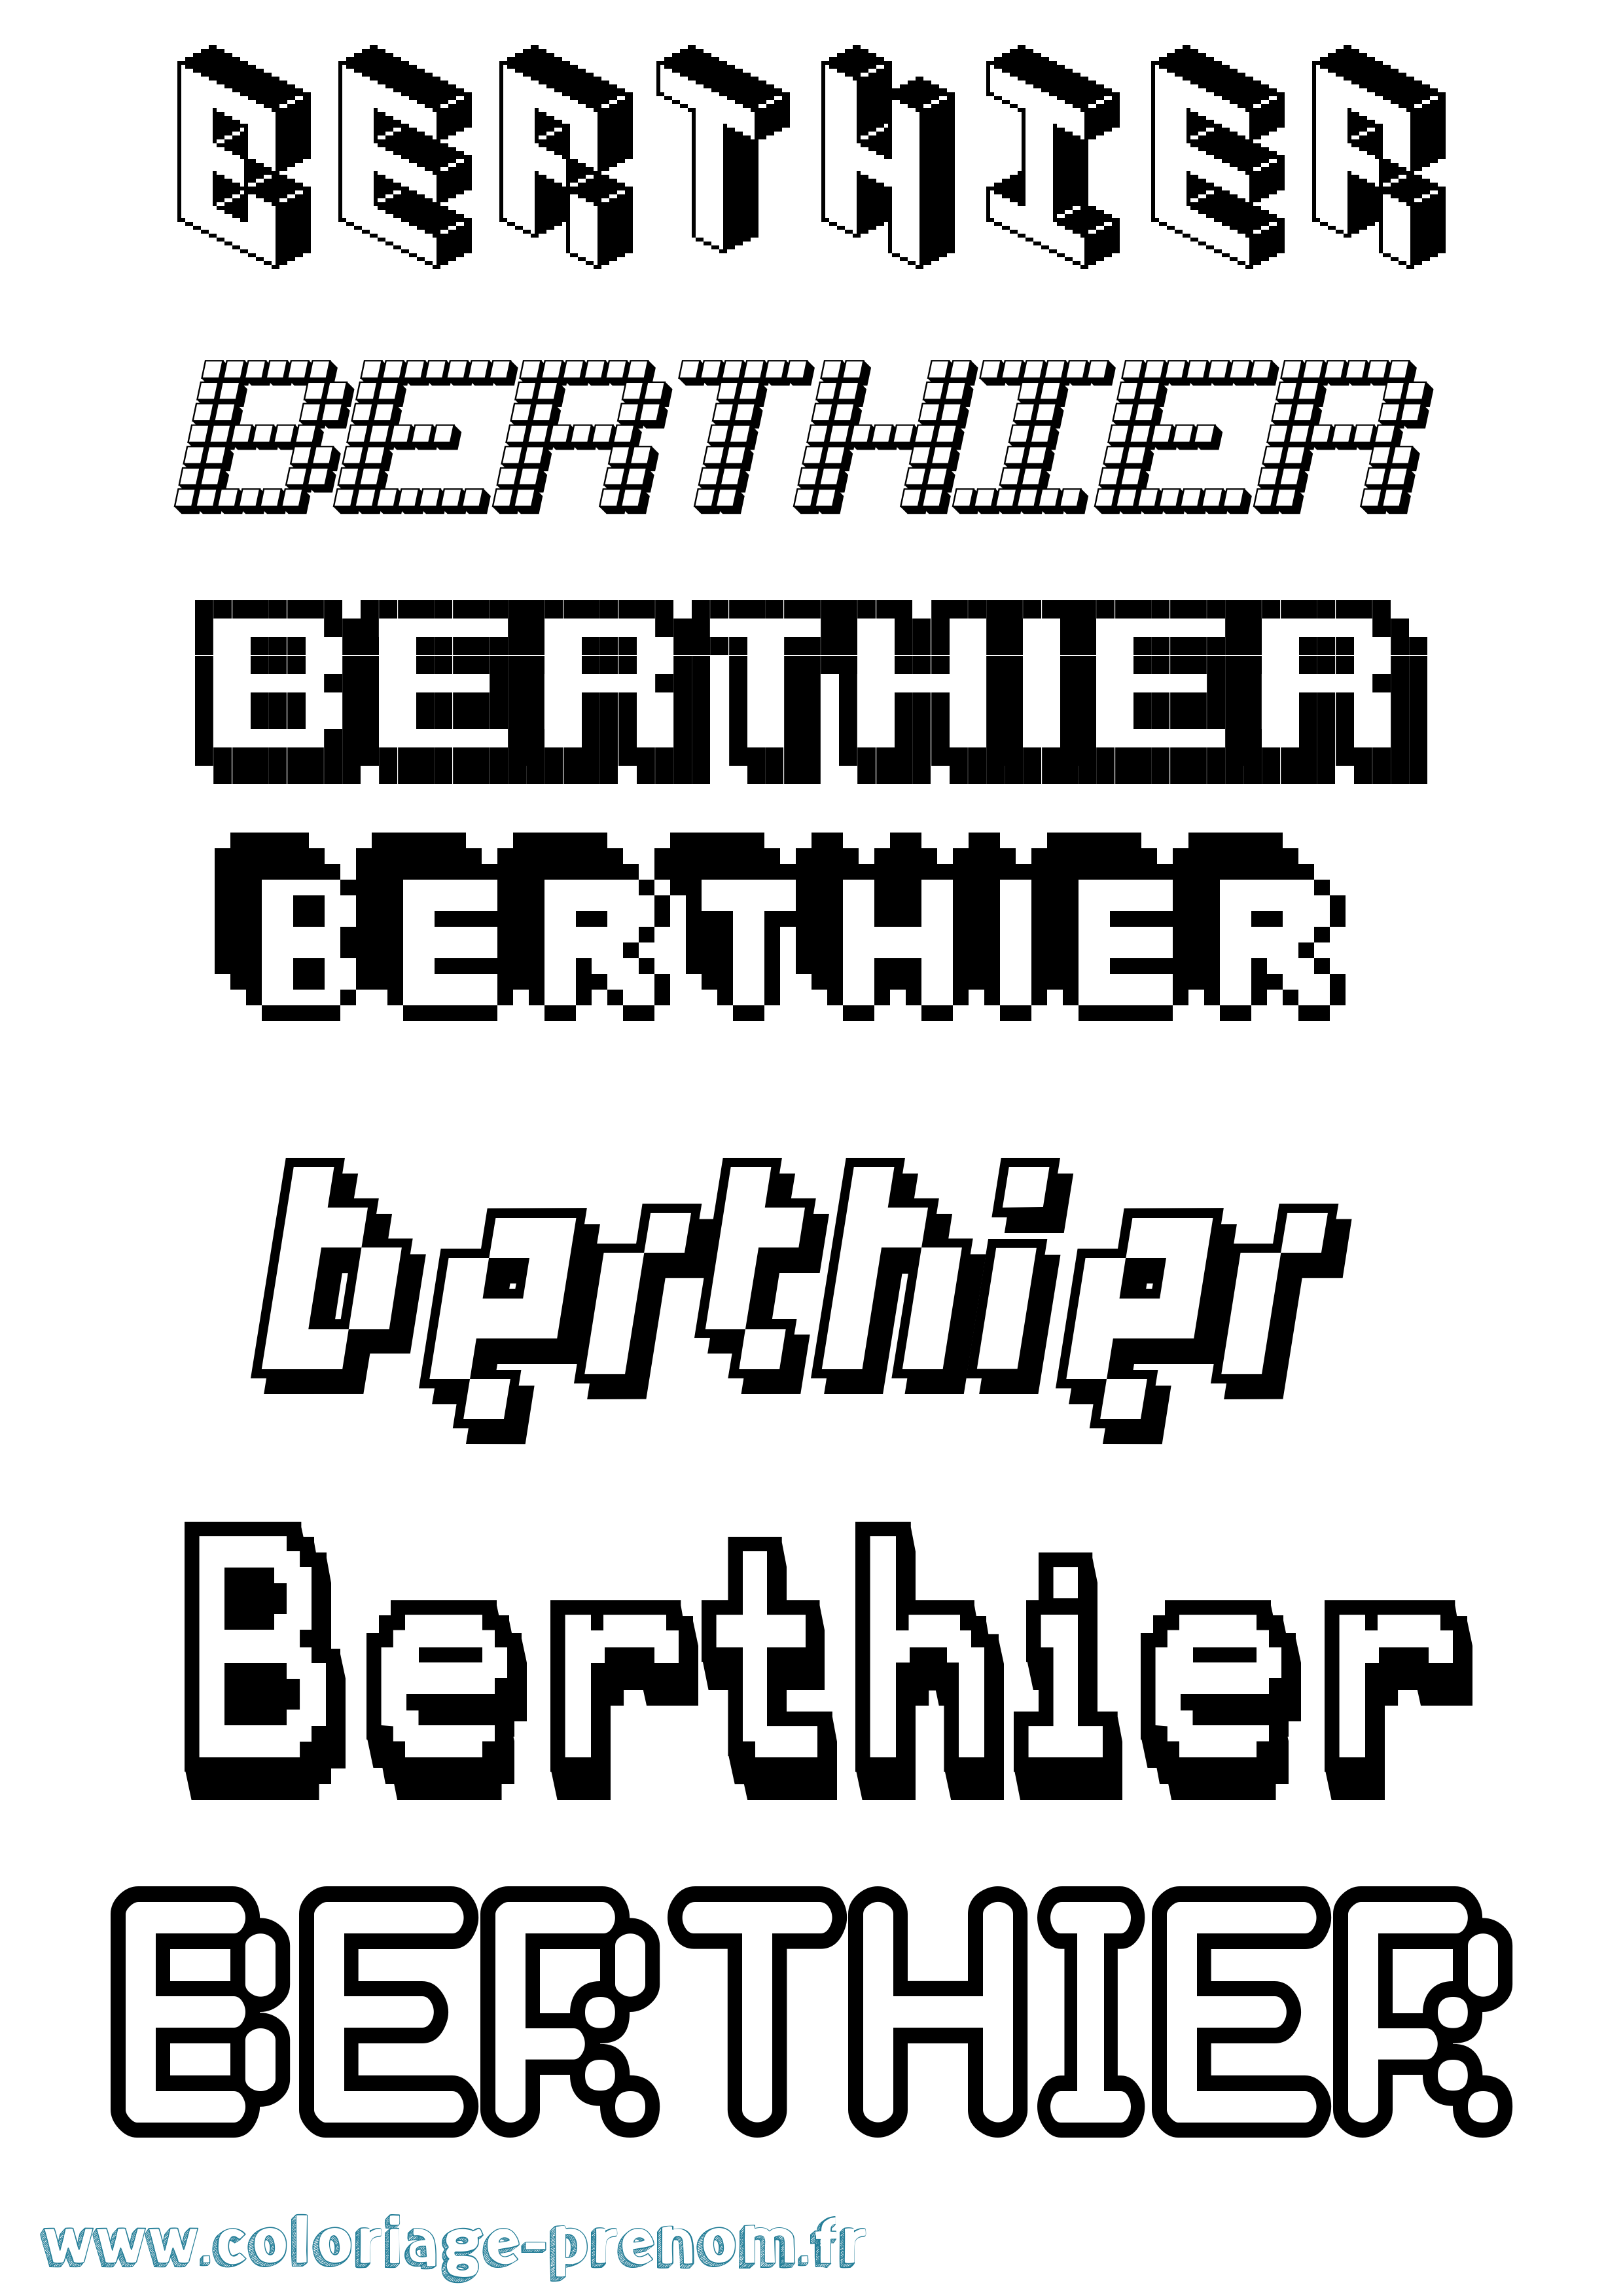 Coloriage prénom Berthier Pixel